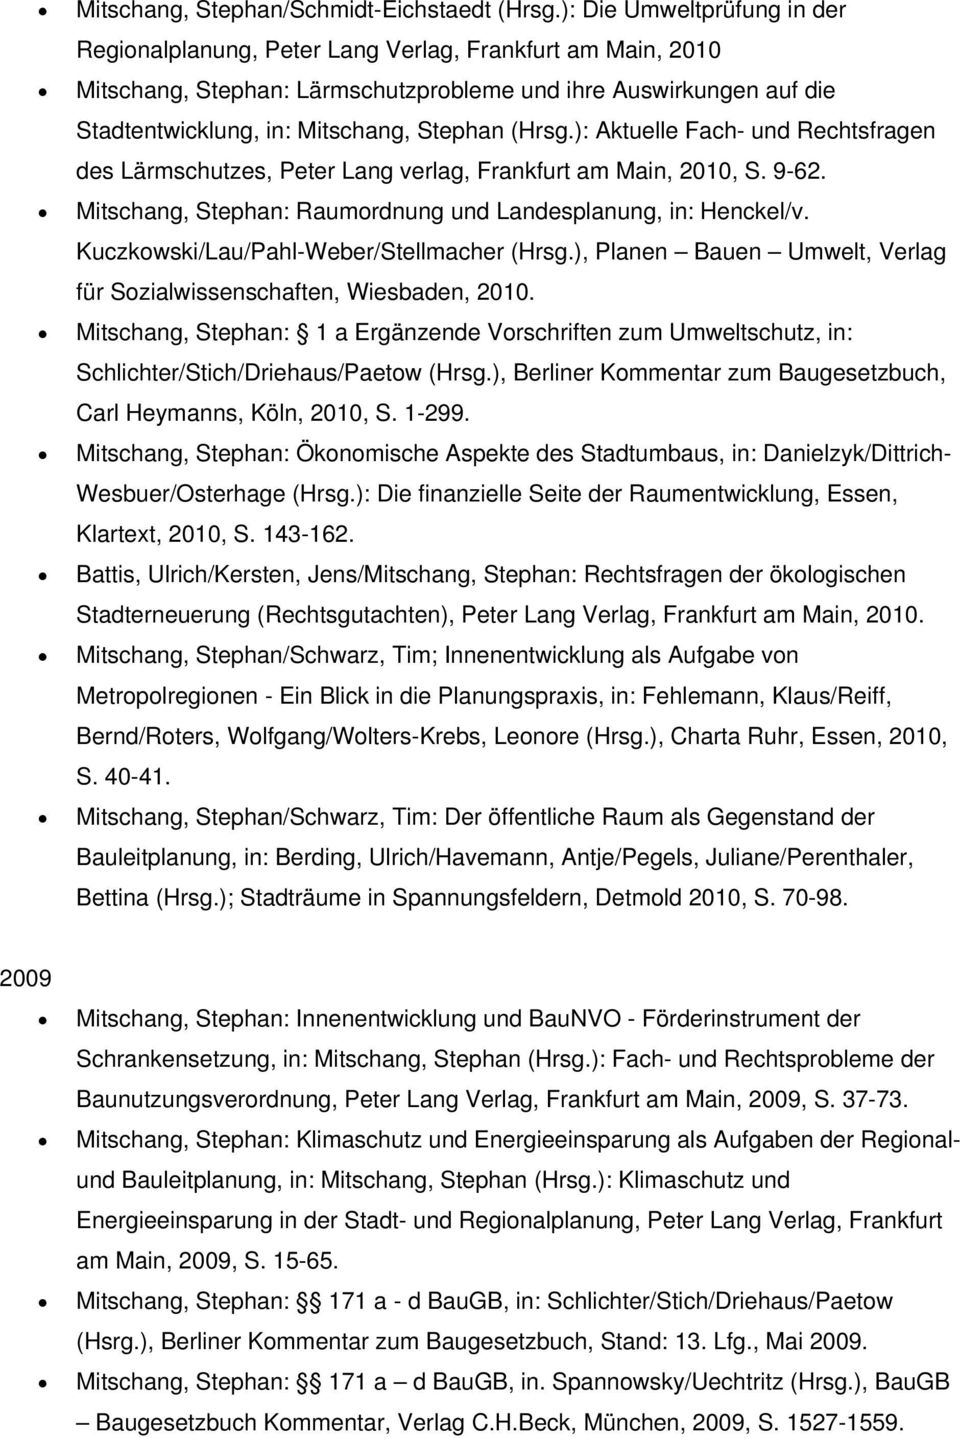 (Hrsg.): Aktuelle Fach- und Rechtsfragen des Lärmschutzes, Peter Lang verlag, Frankfurt am Main, 2010, S. 9-62. Mitschang, Stephan: Raumordnung und Landesplanung, in: Henckel/v.